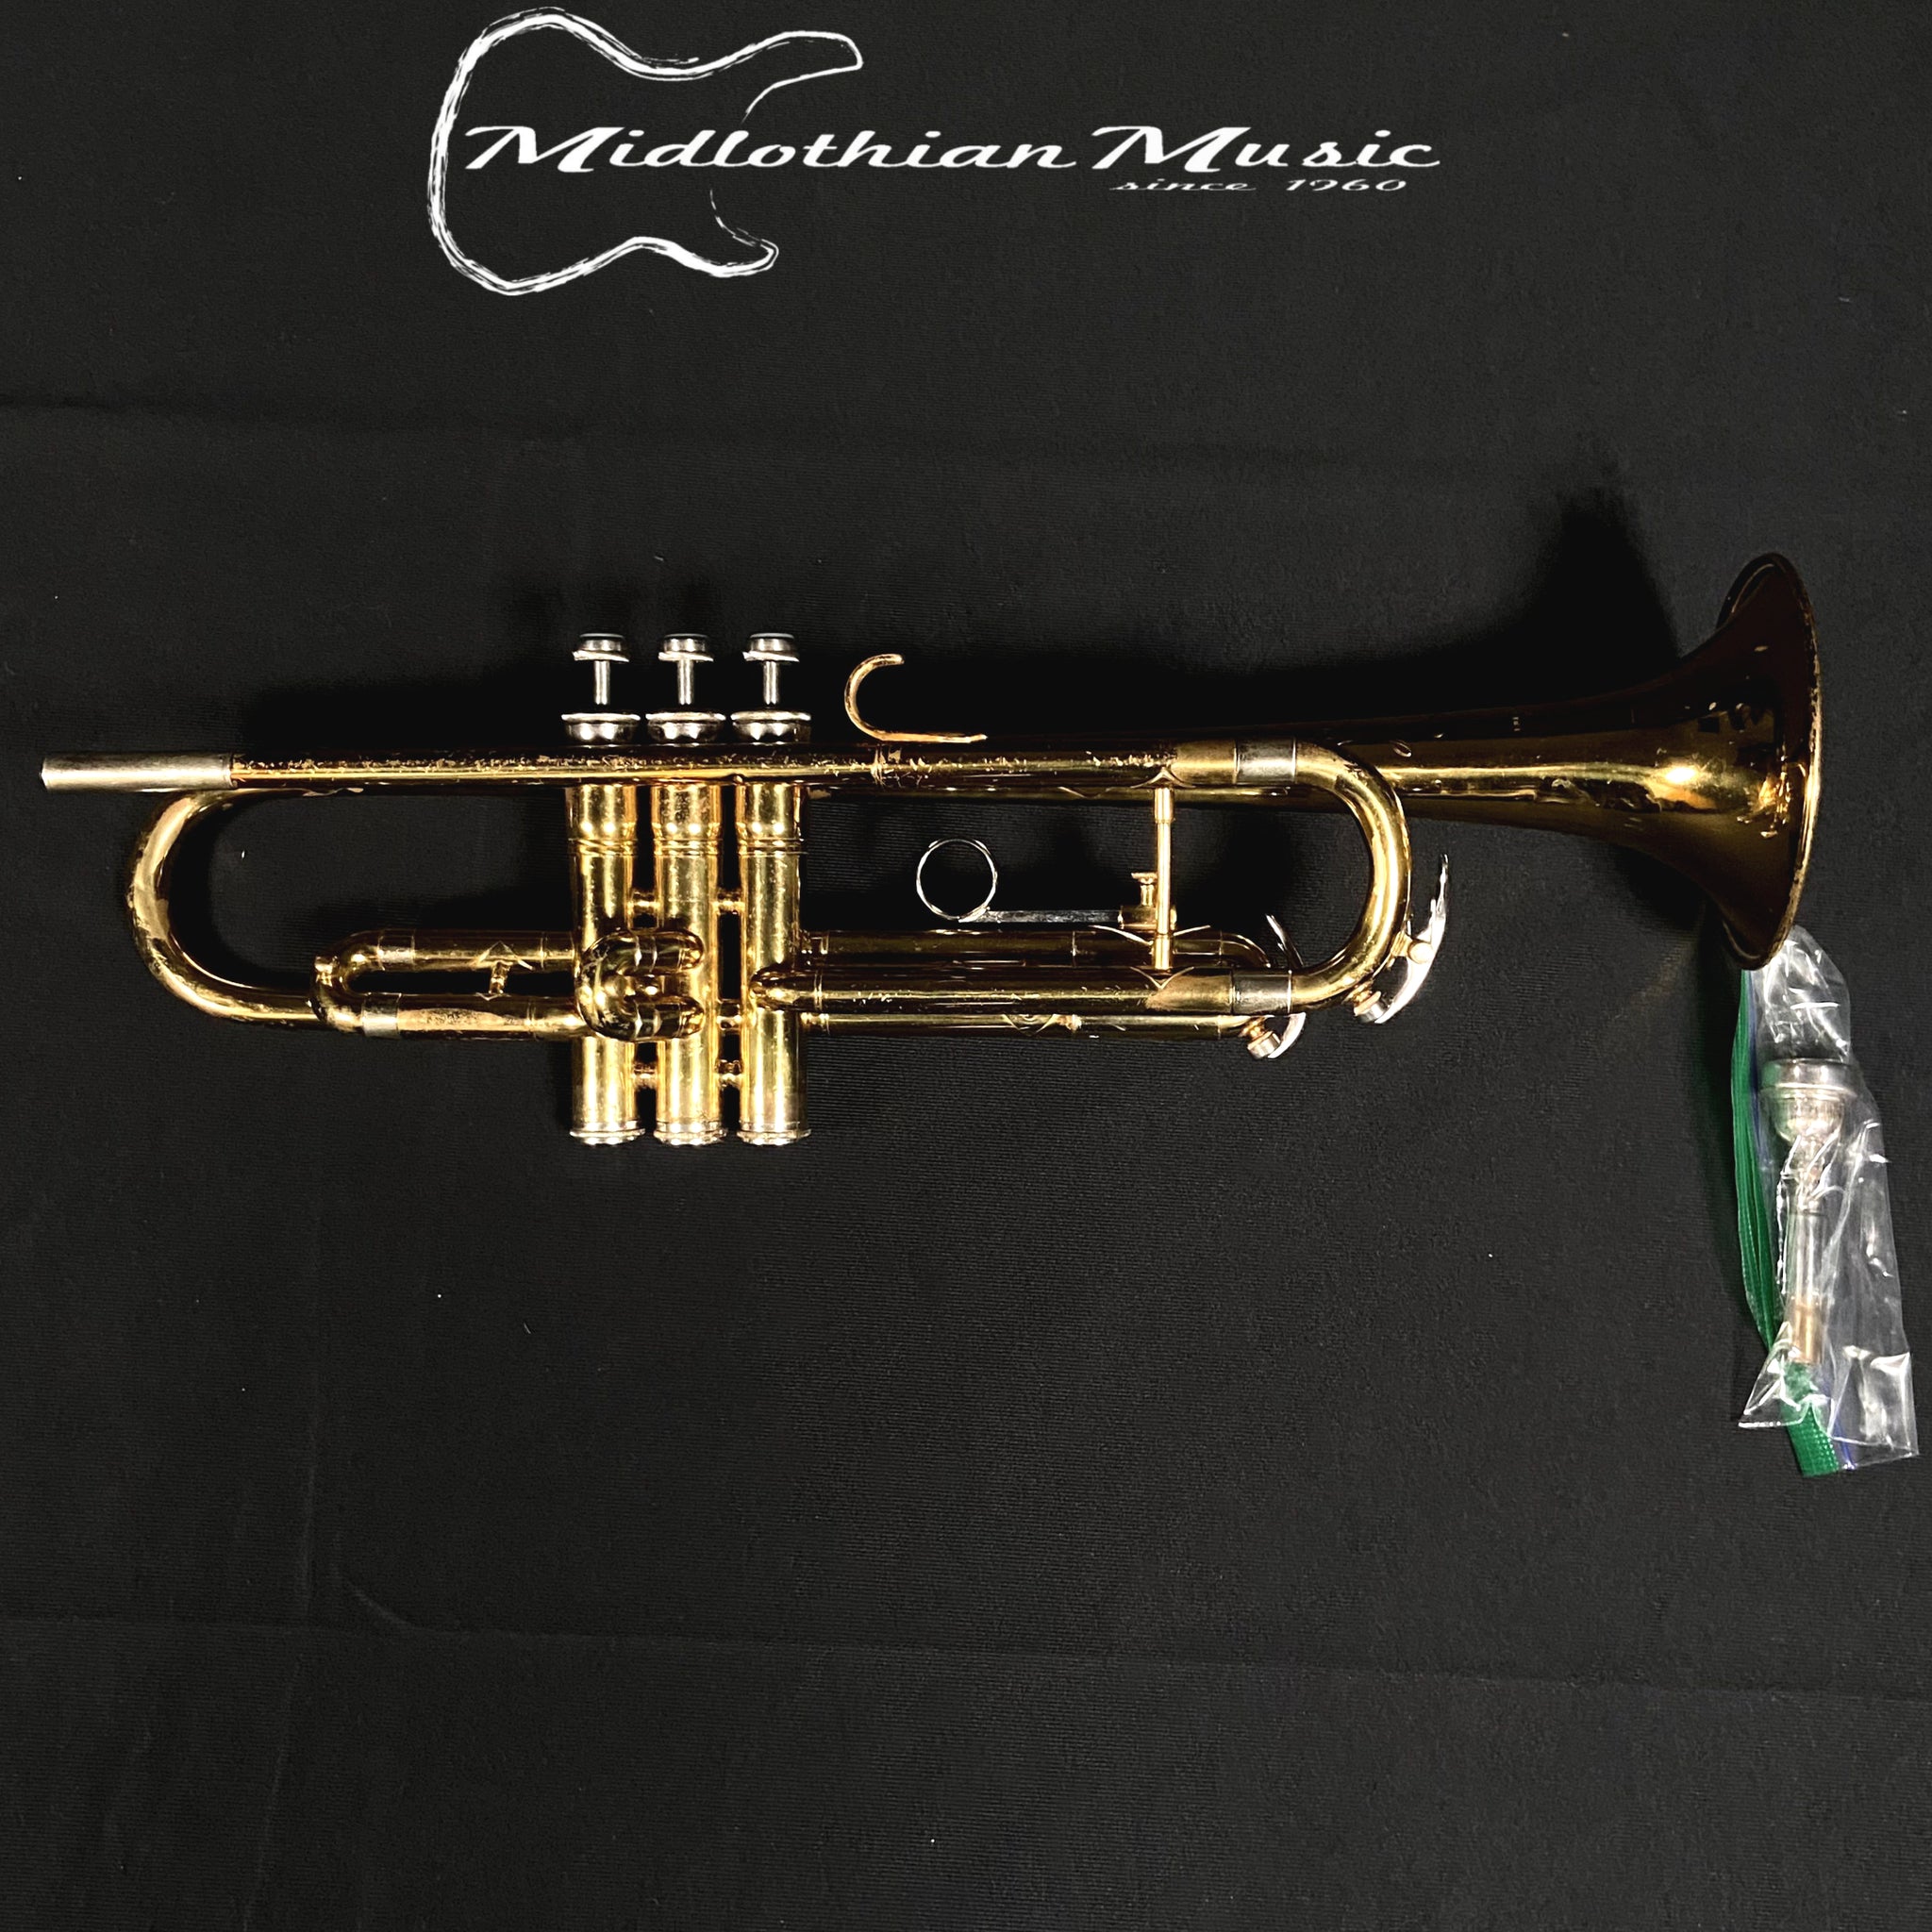 Vintage Cleveland 600 Trumpet & Case #305137 - Pre-Owned